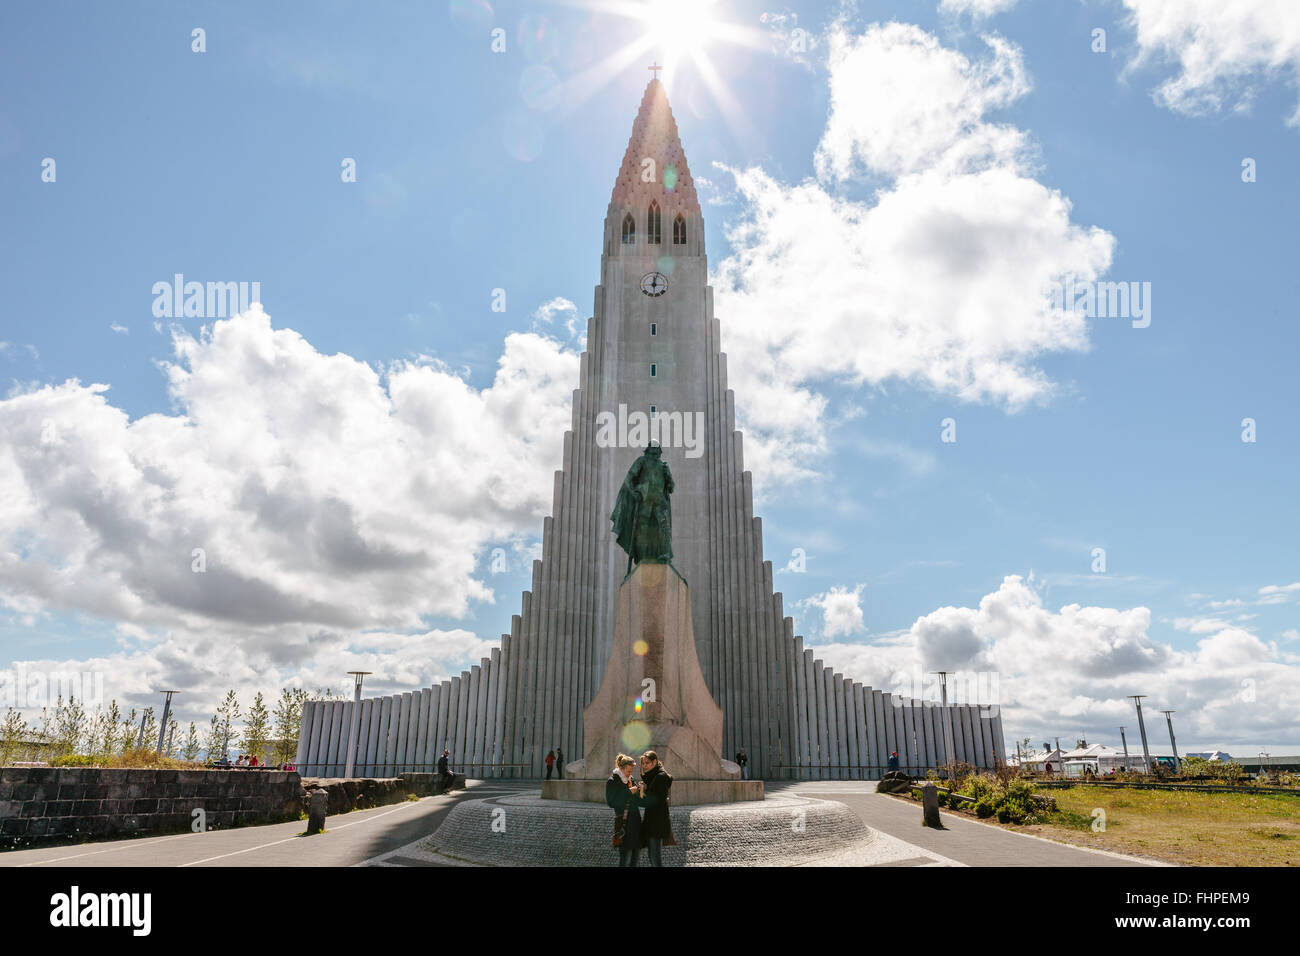 Hallgrimskirkja Cathedral, Reykjavik on a sunny day Stock Photo